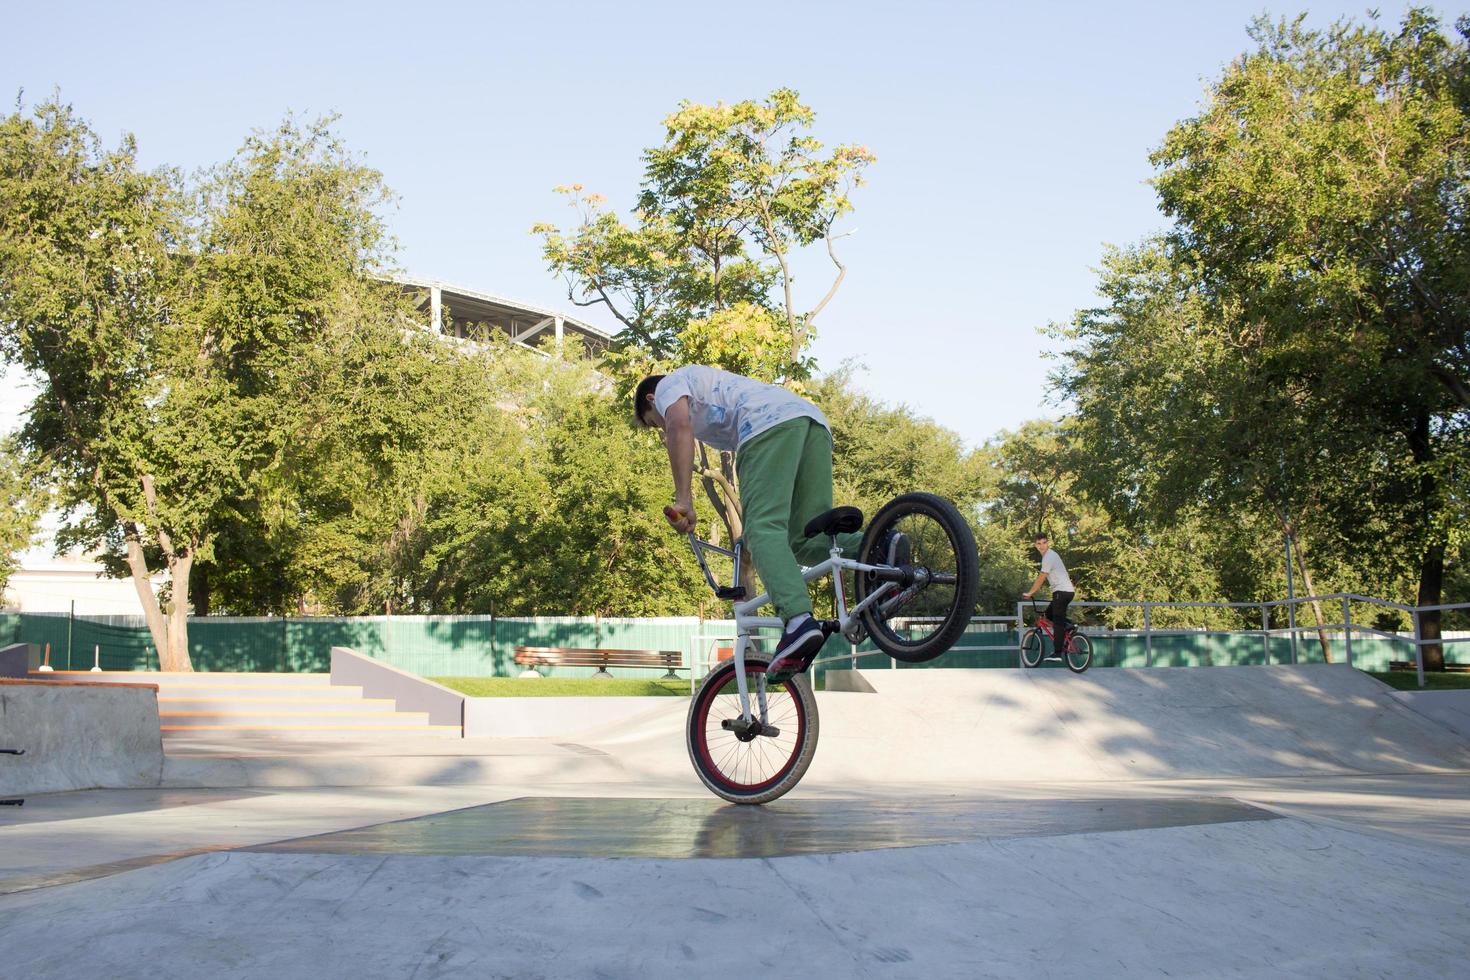 BMX-Fahrertraining und Tricks auf dem Straßenplatz, Fahrrad-Stuntfahrer im cocncrete Skatepark foto